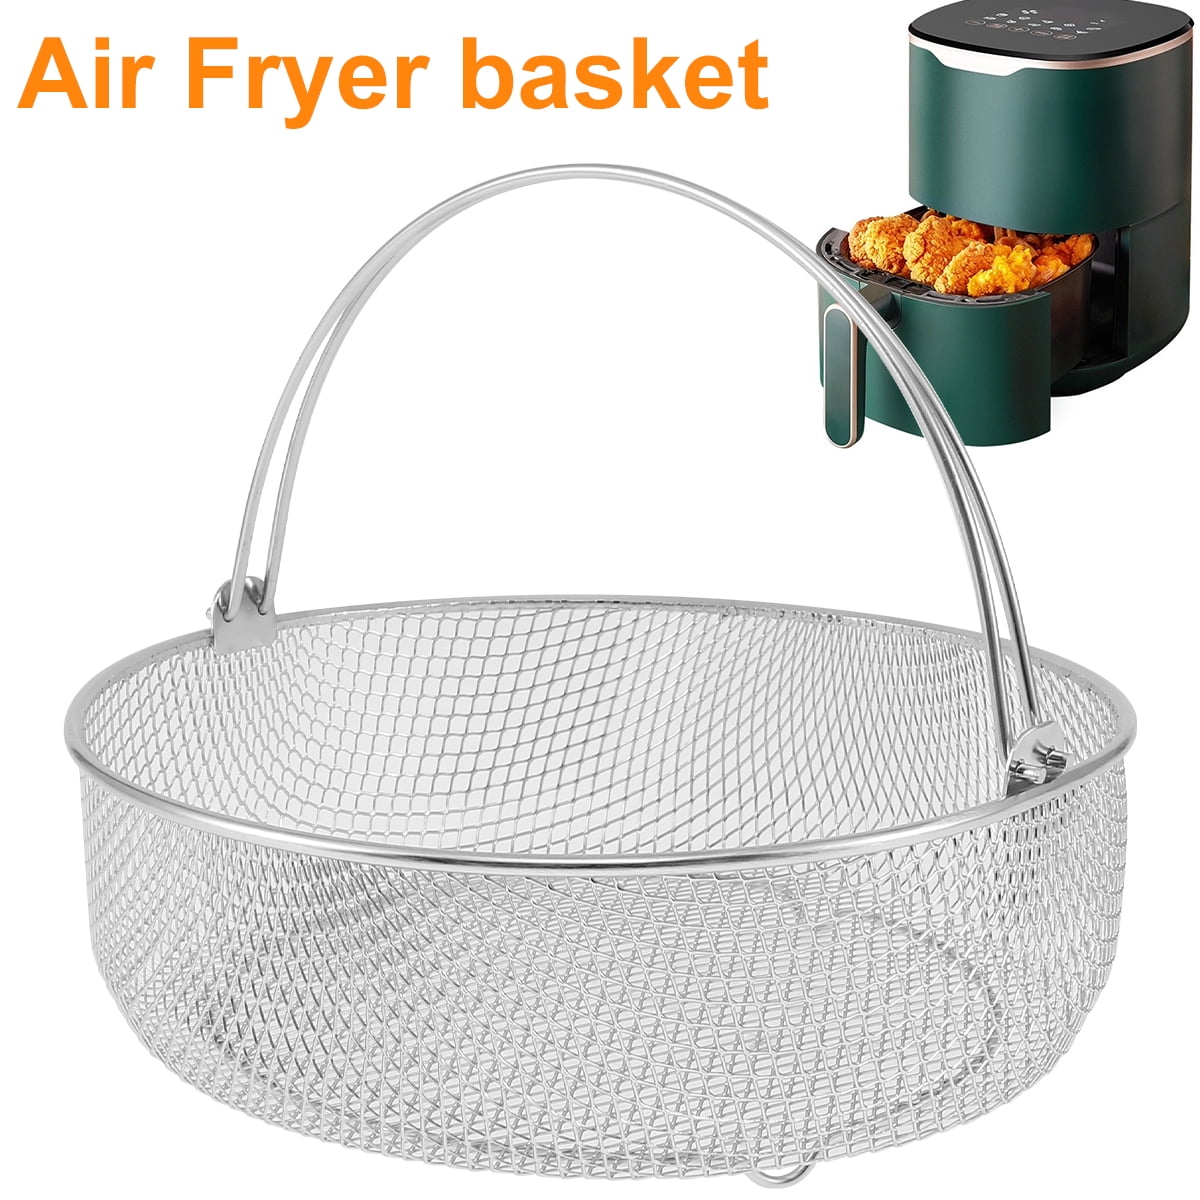 Air Fryer Basket for Mesh Steamer Basket for Ninja Foodi 6.5, 8Qt,Air Fryer Basket,Air Fryer Crisping Basket with Handle, Silver